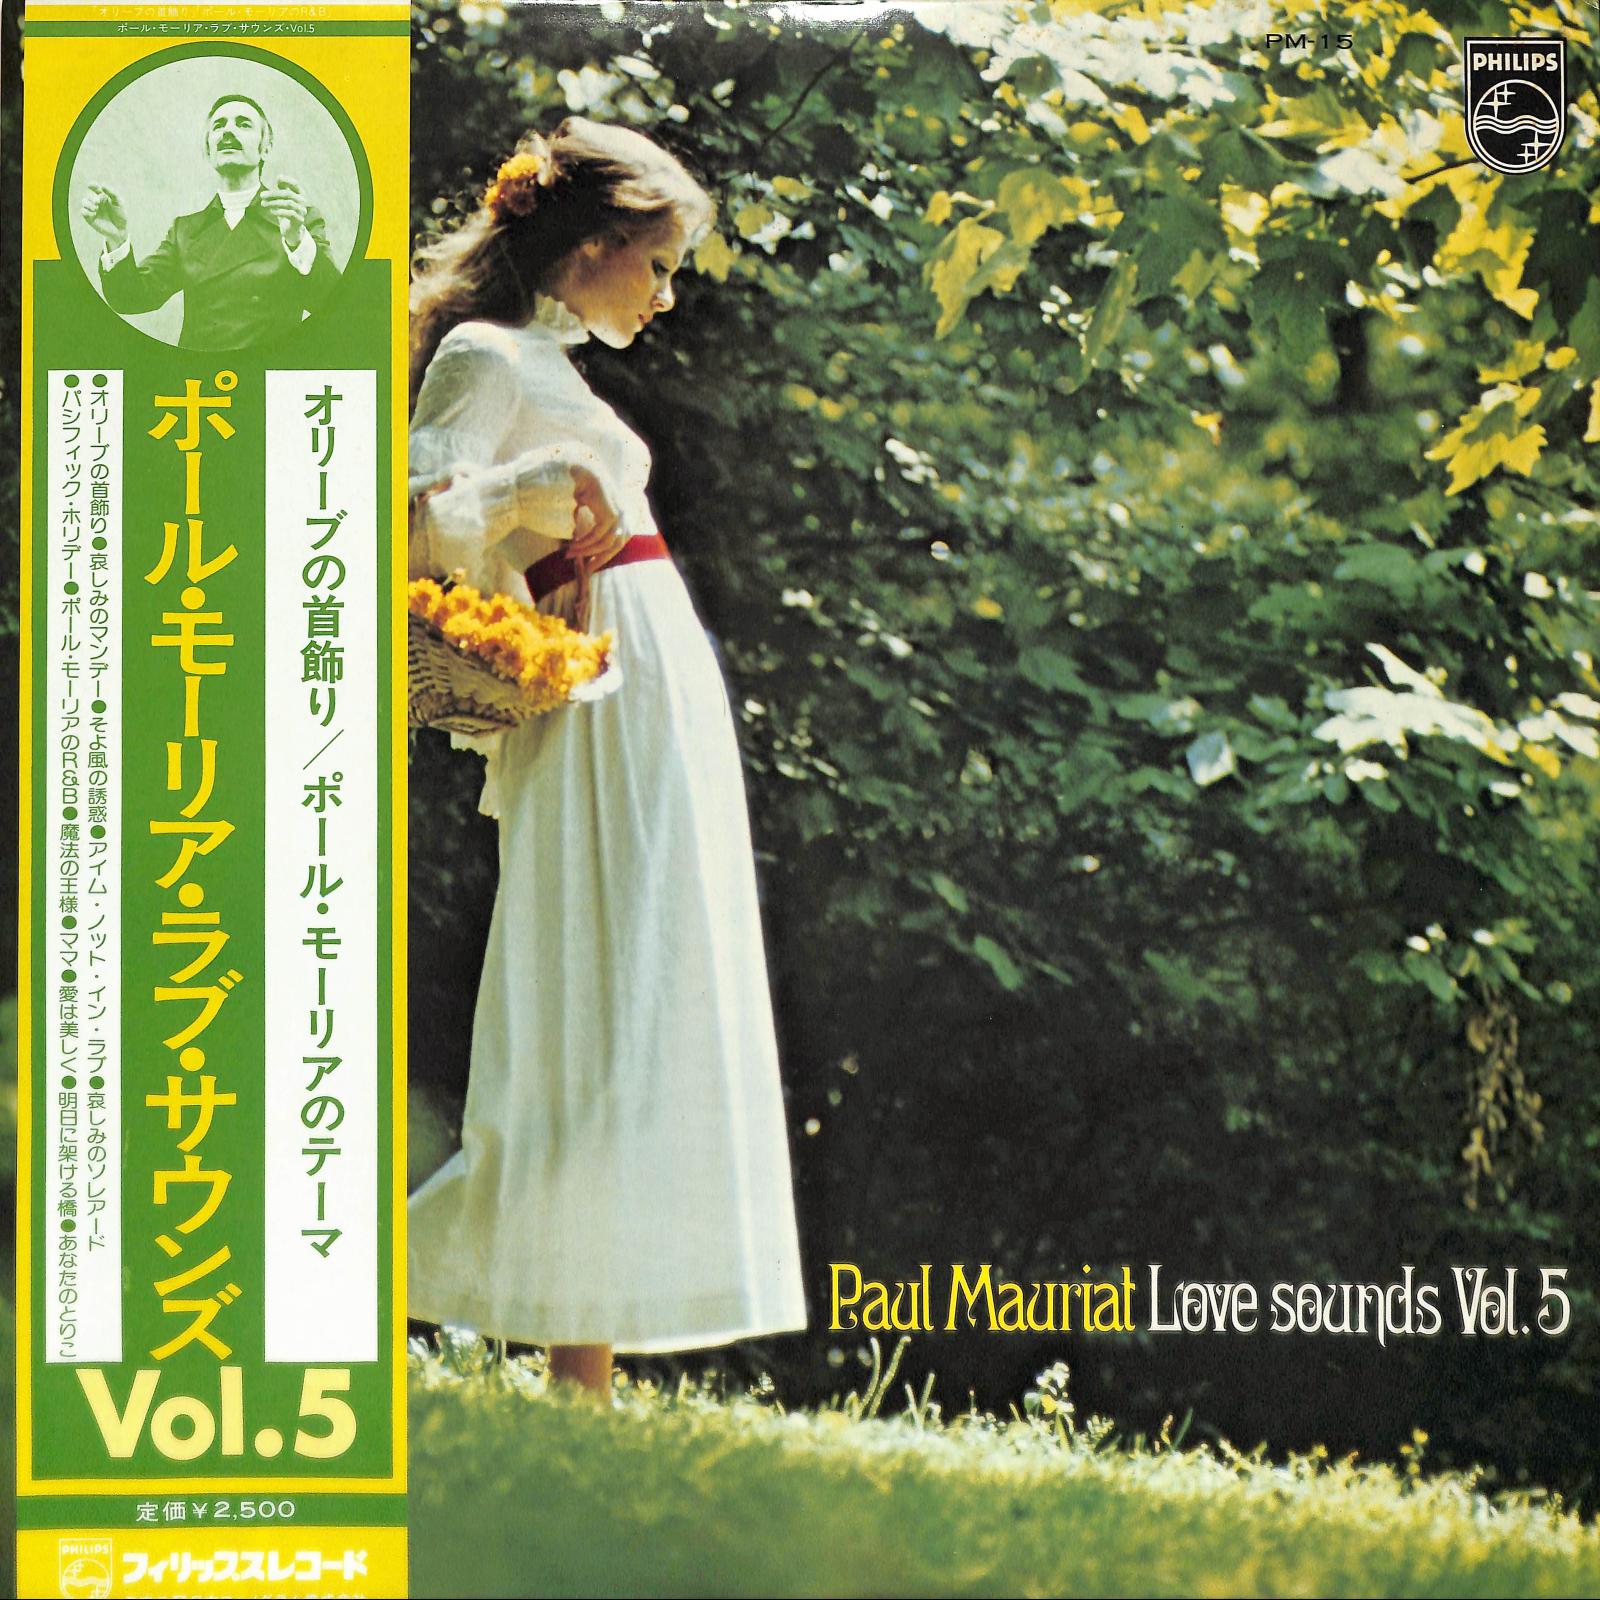 PAUL MAURIAT - Love Sounds Vol. 5